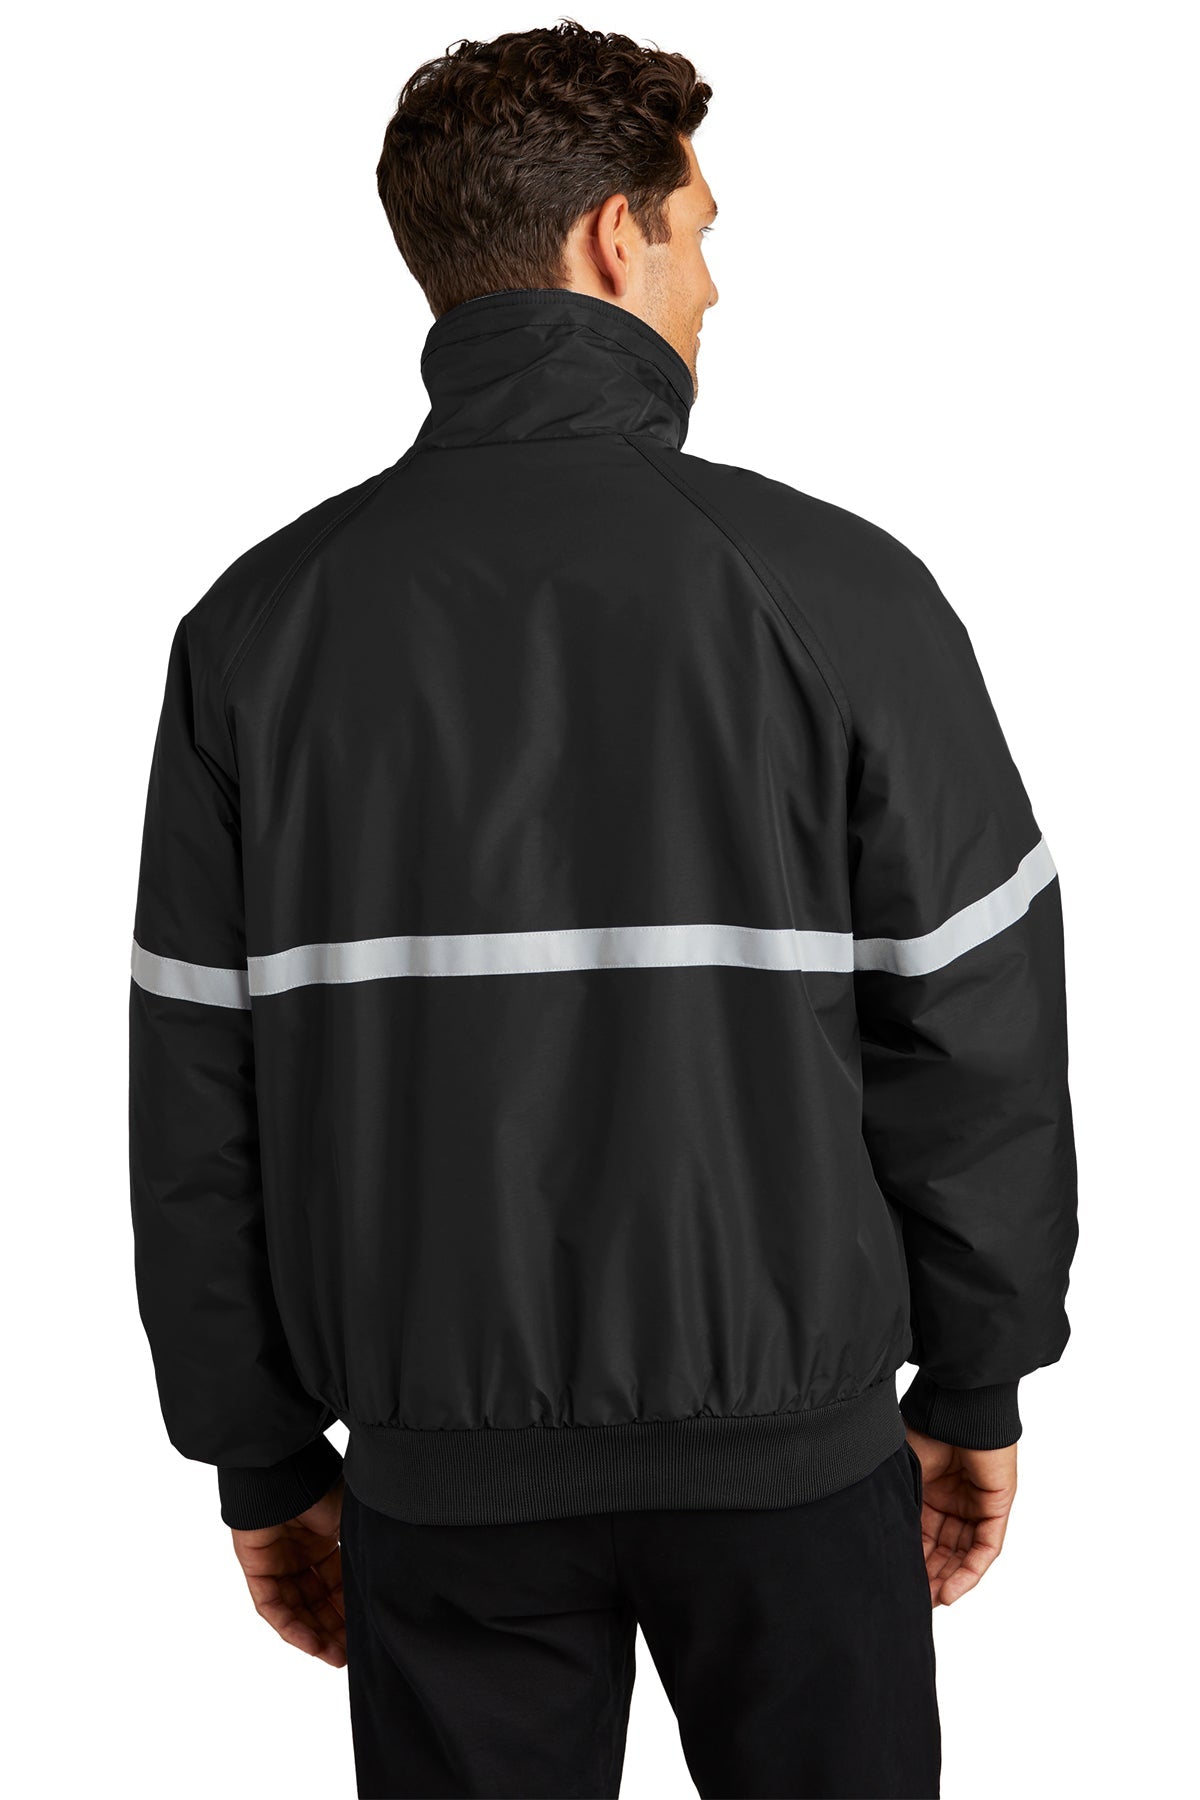 port authority_j754r _true black/ true black/ reflective_company_logo_jackets